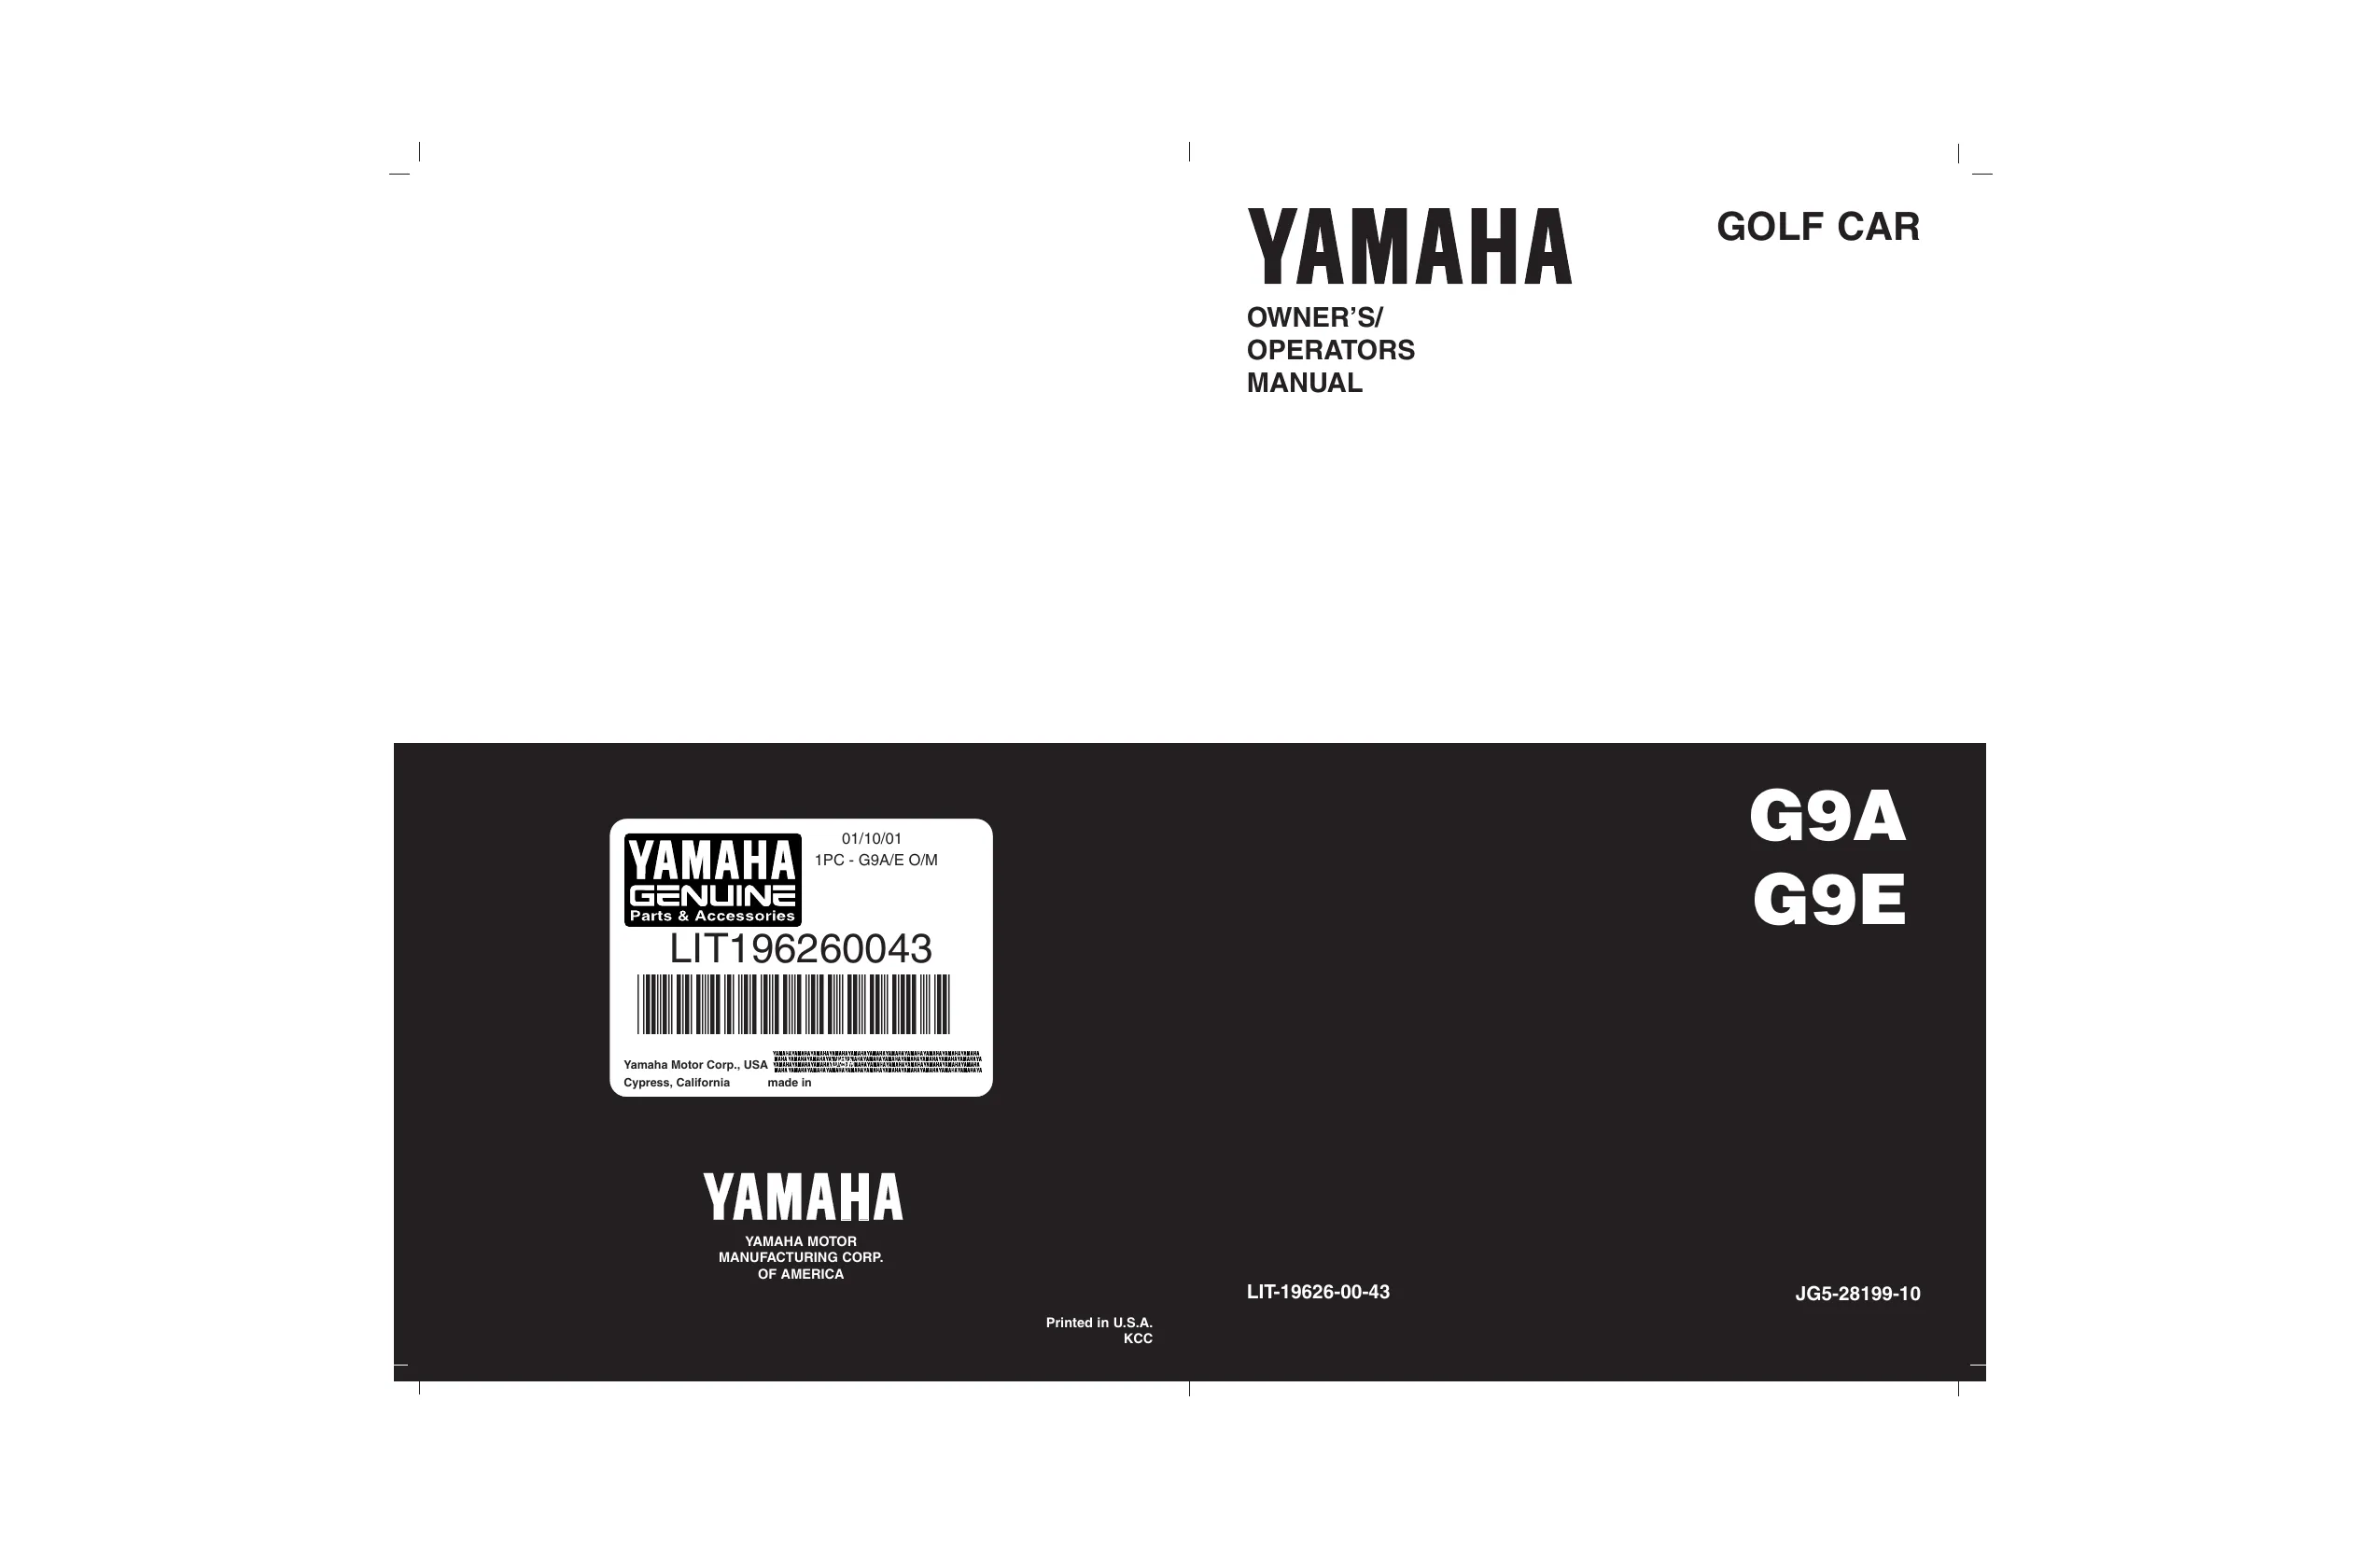 Yamaha Golf Cart G2-G9, G2-A/E. G9-AJ/EJ, G9-AG/AH, G9-EG/EH1, G9-EH2 repair manual